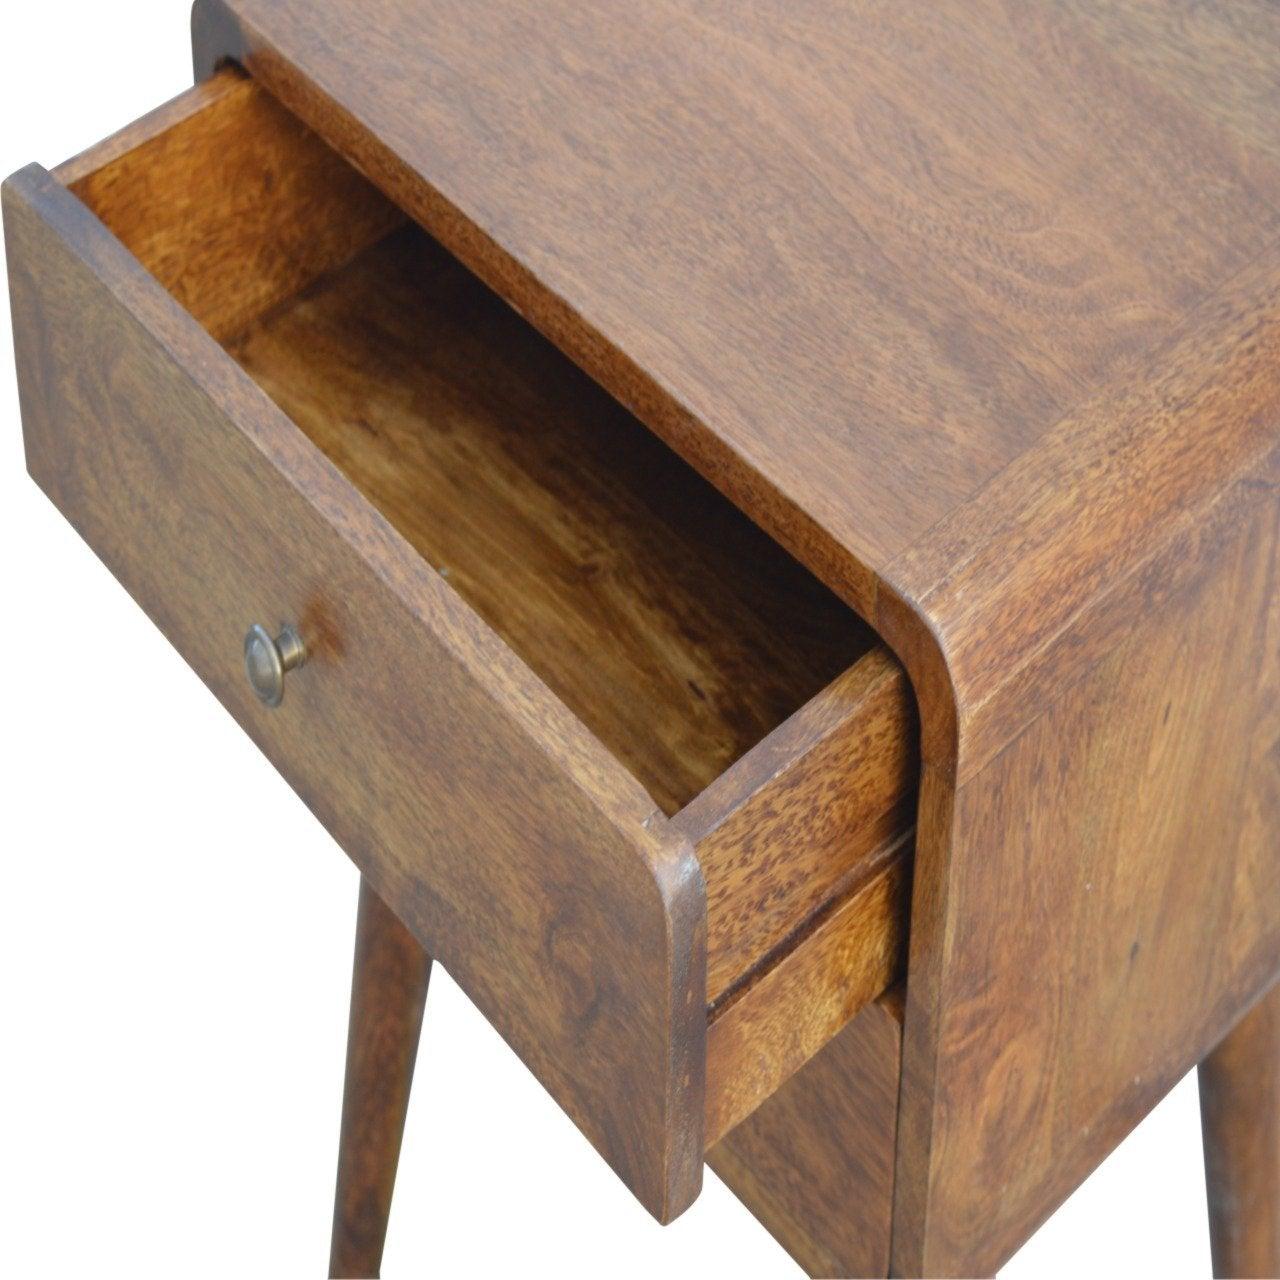 Curved chestnut bedside table - crimblefest furniture - image 7